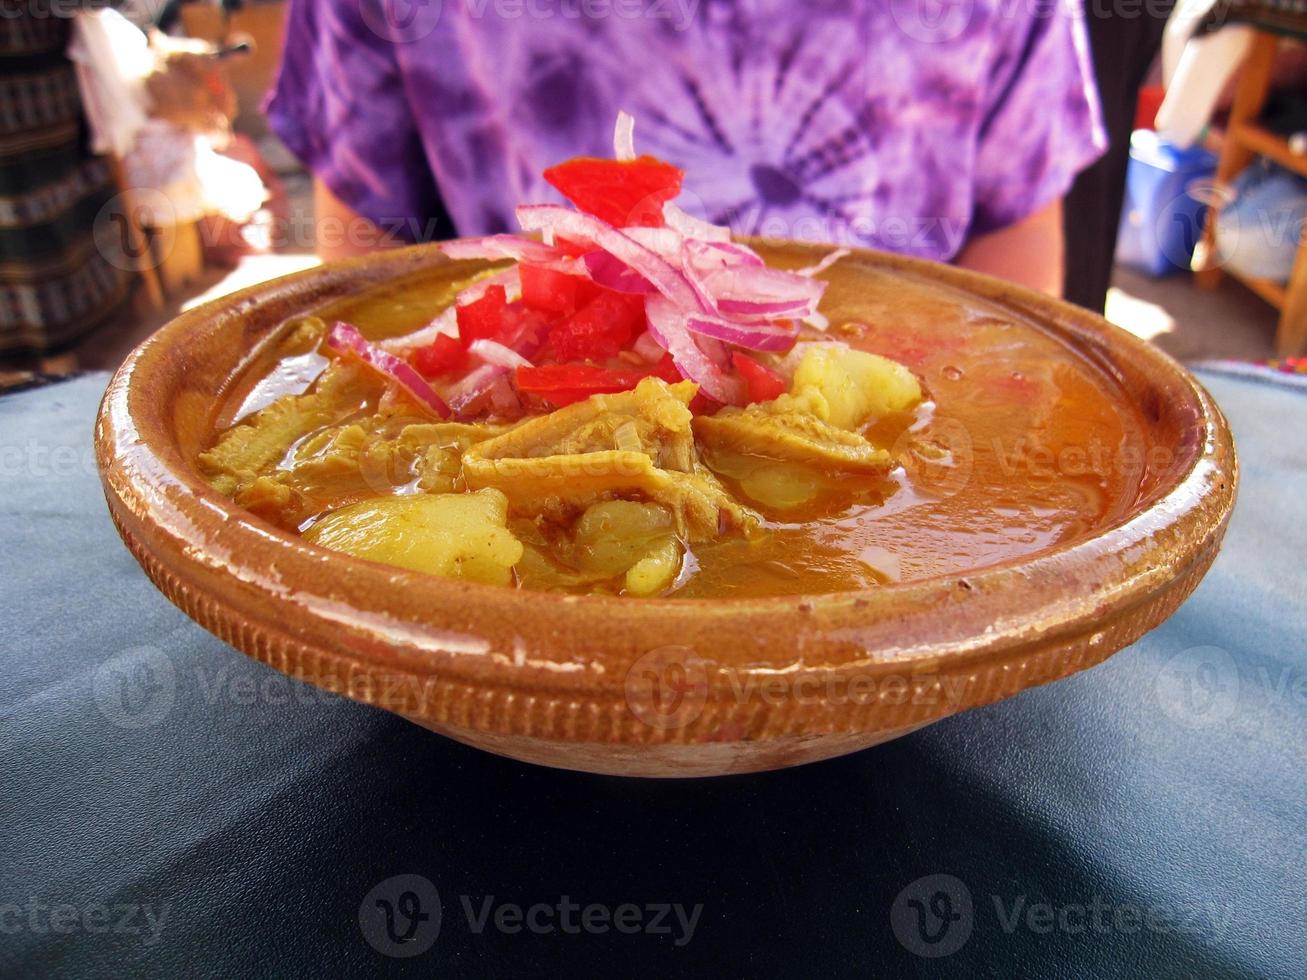 ragoût de boeuf aux pommes de terre servi dans un bol d'argile, cuisine bolivienne photo